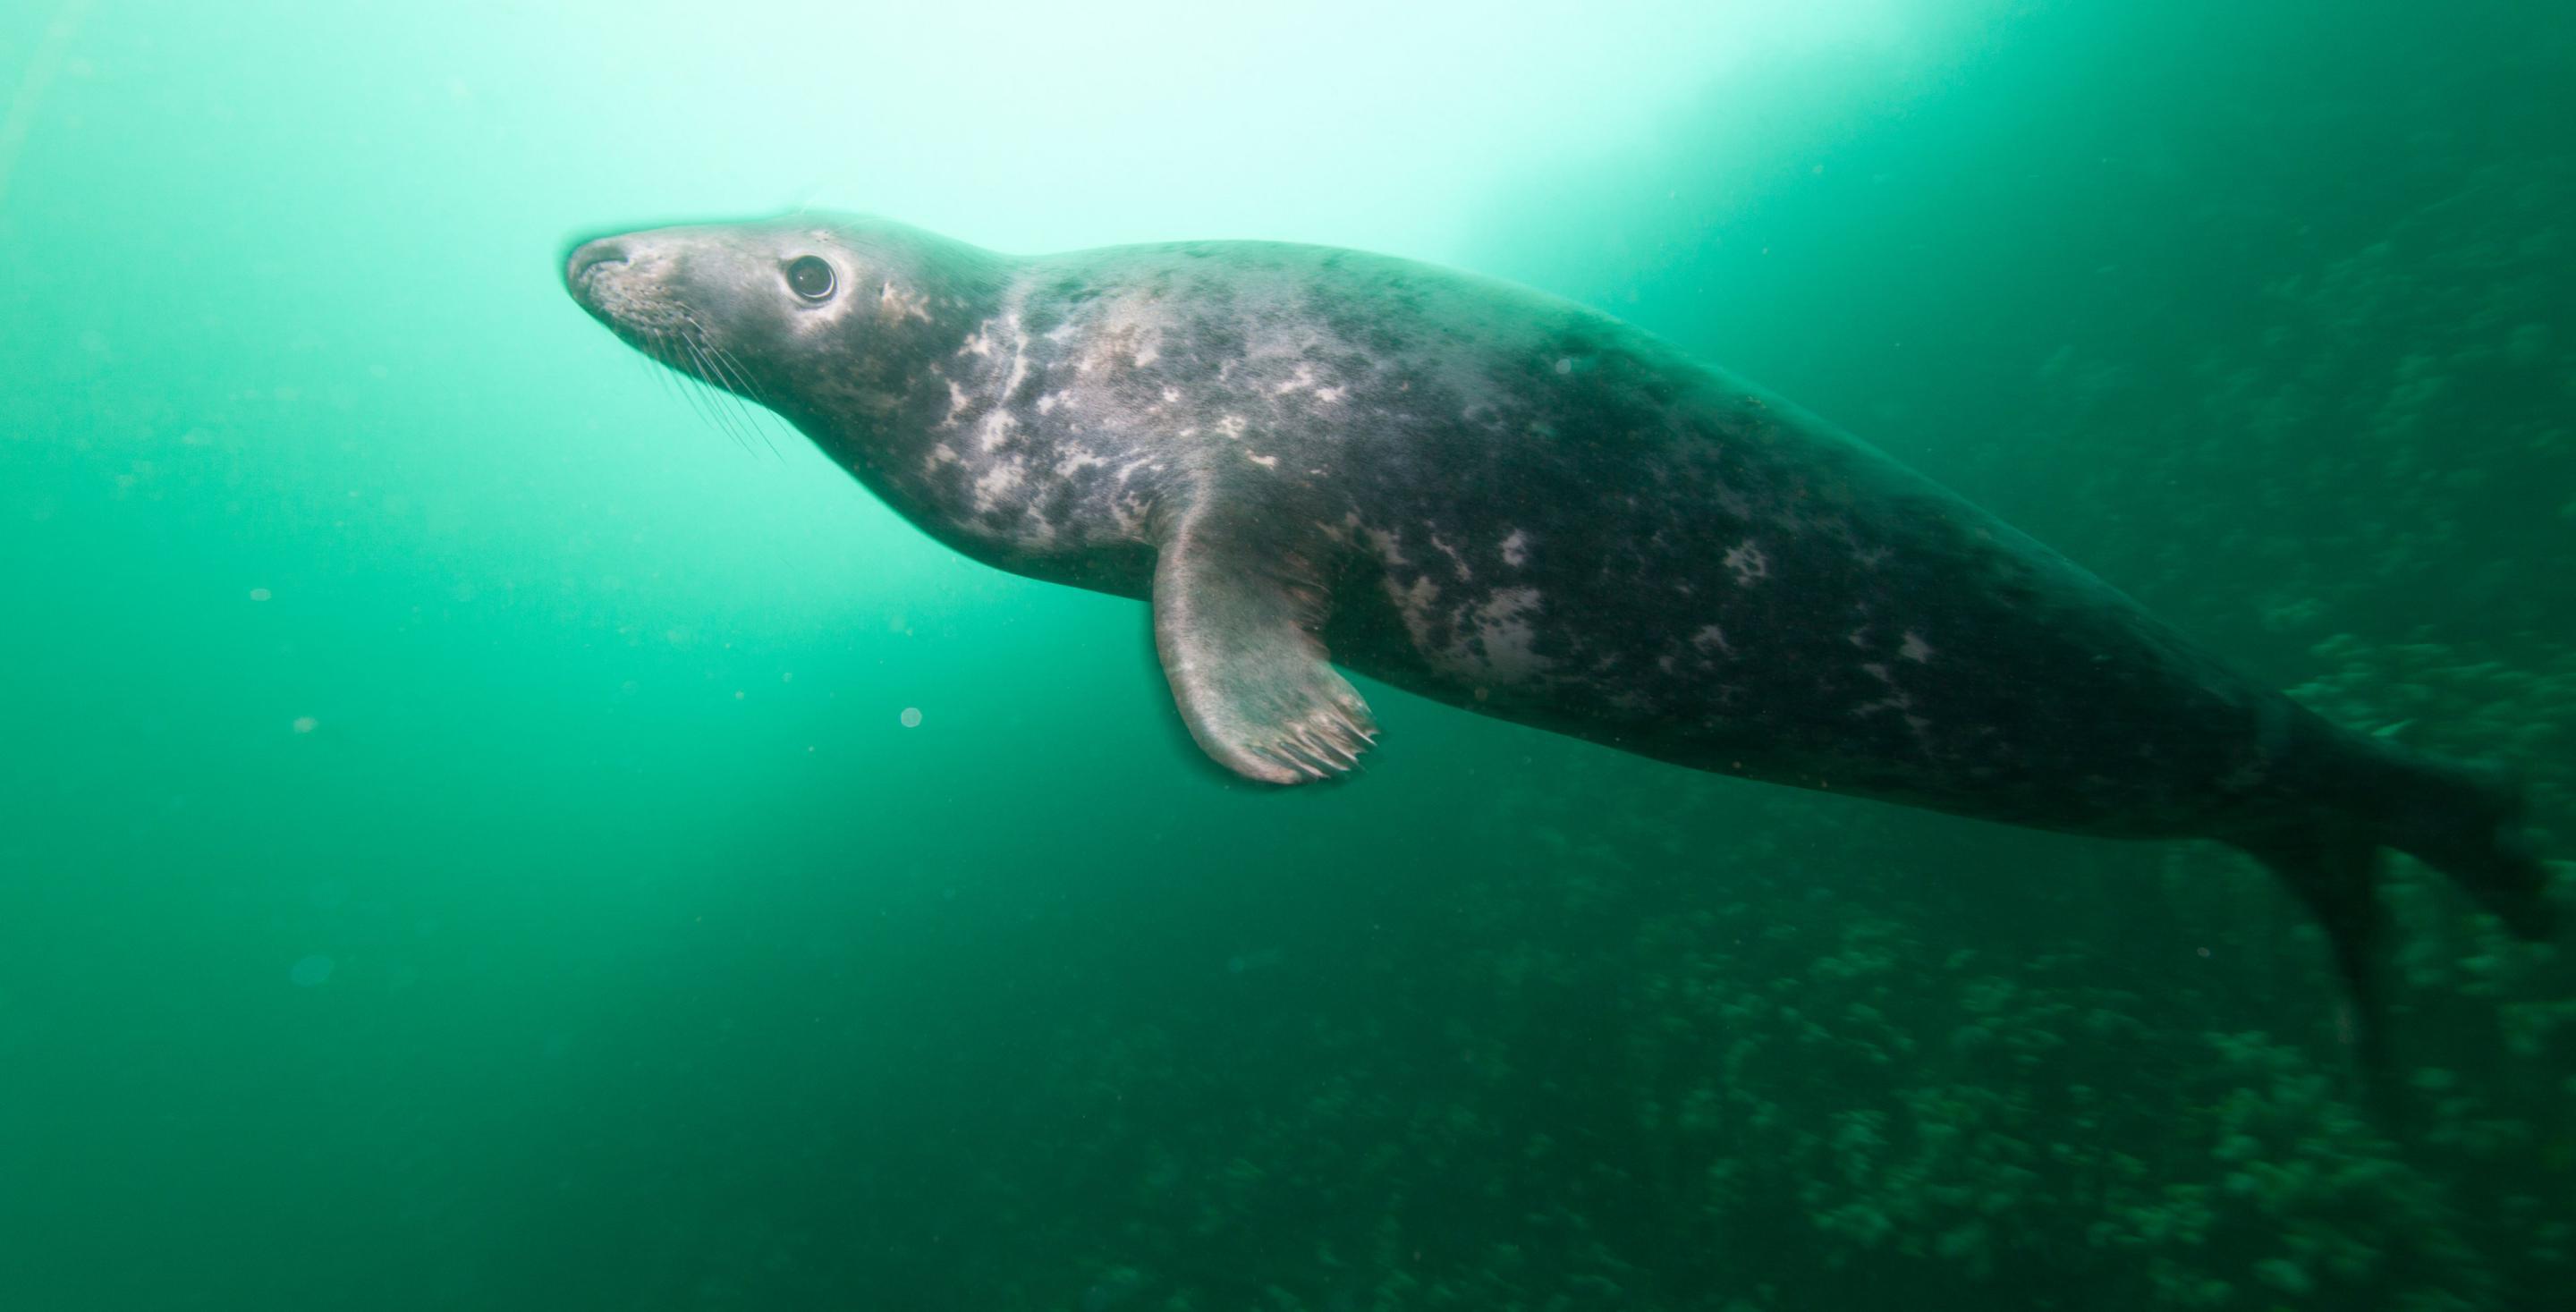 Zone protégée depuis 1945, les îles de Farnes abritent une colonie particulièrement importante de phoques (Phoca vitulina) - Plongée aux iles de Farne avec les phoques - Angleterre